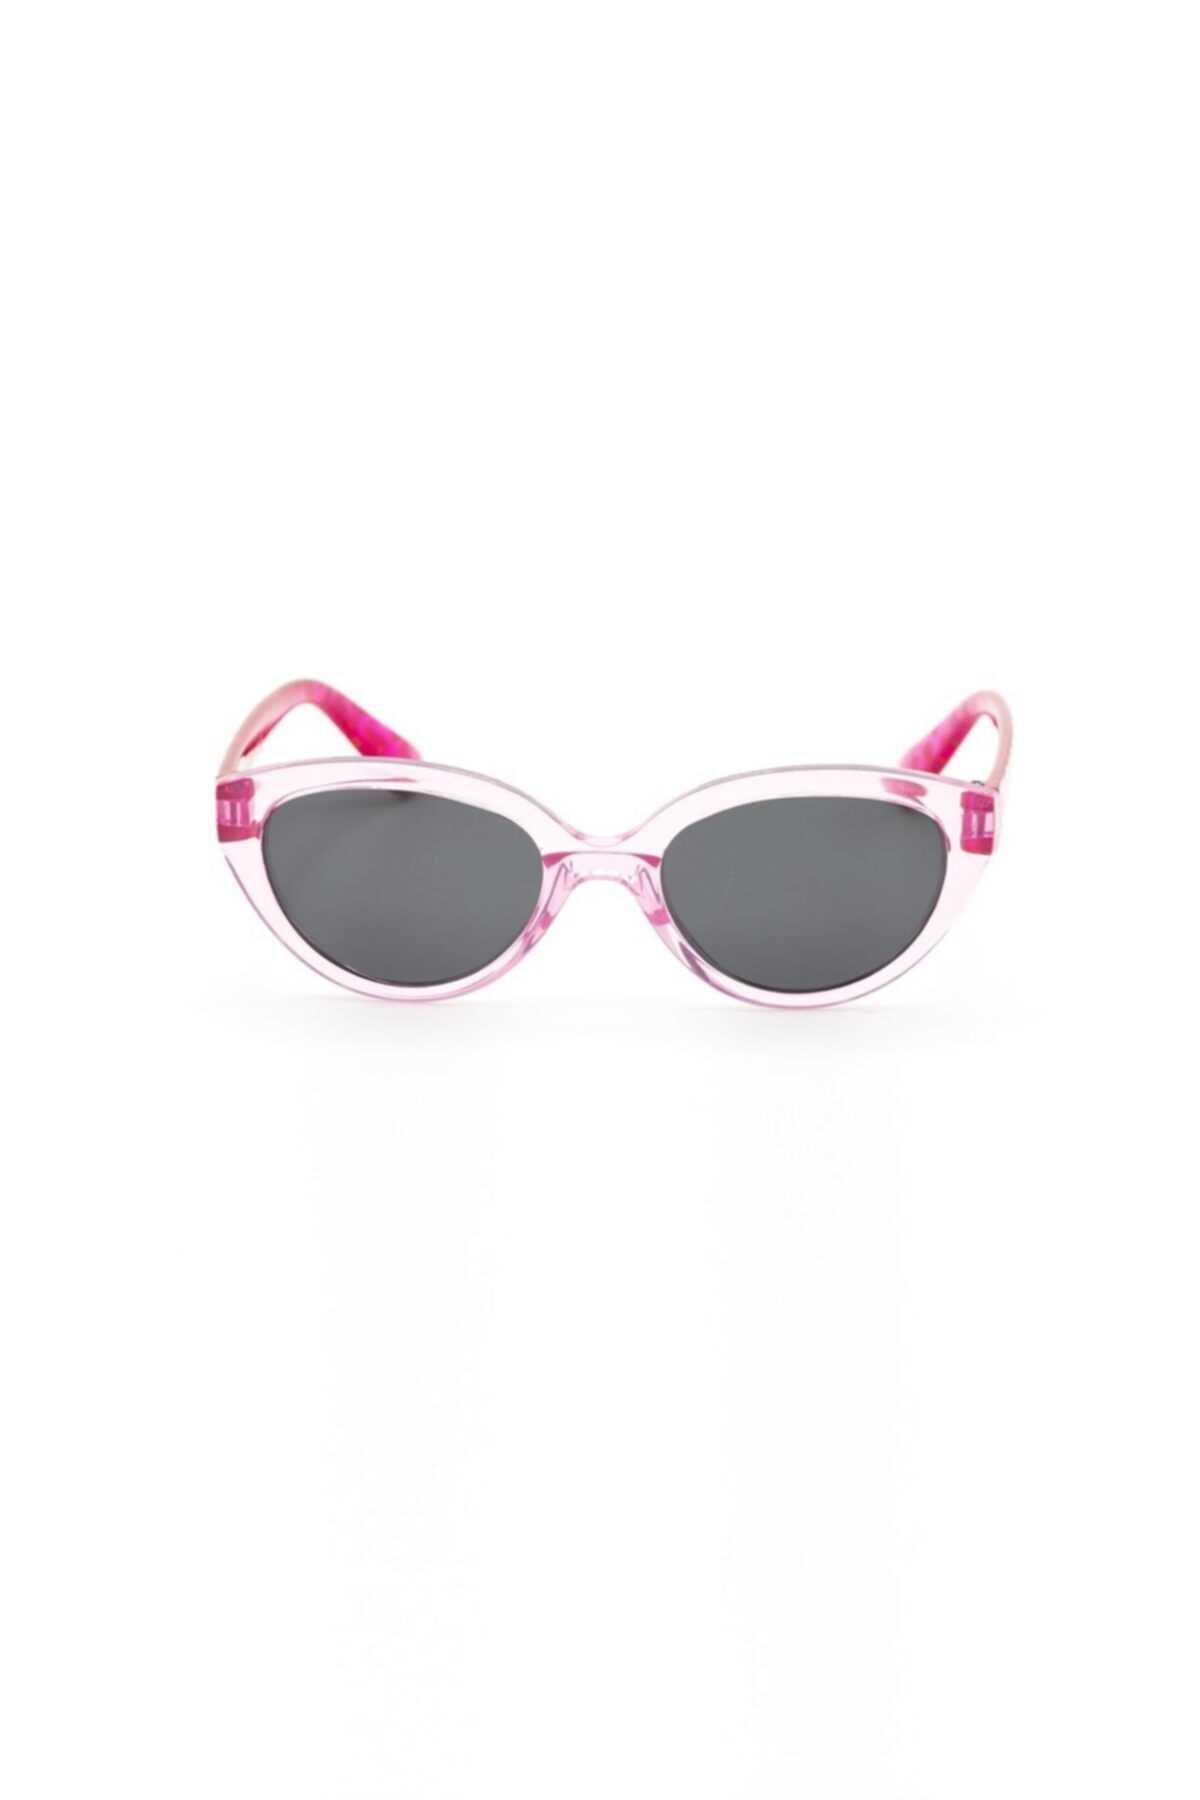 خرید عینک آفتابی دخترانه 2021 برند Barbie ŞEFFAF PEMBE-PEMBE ty123656406